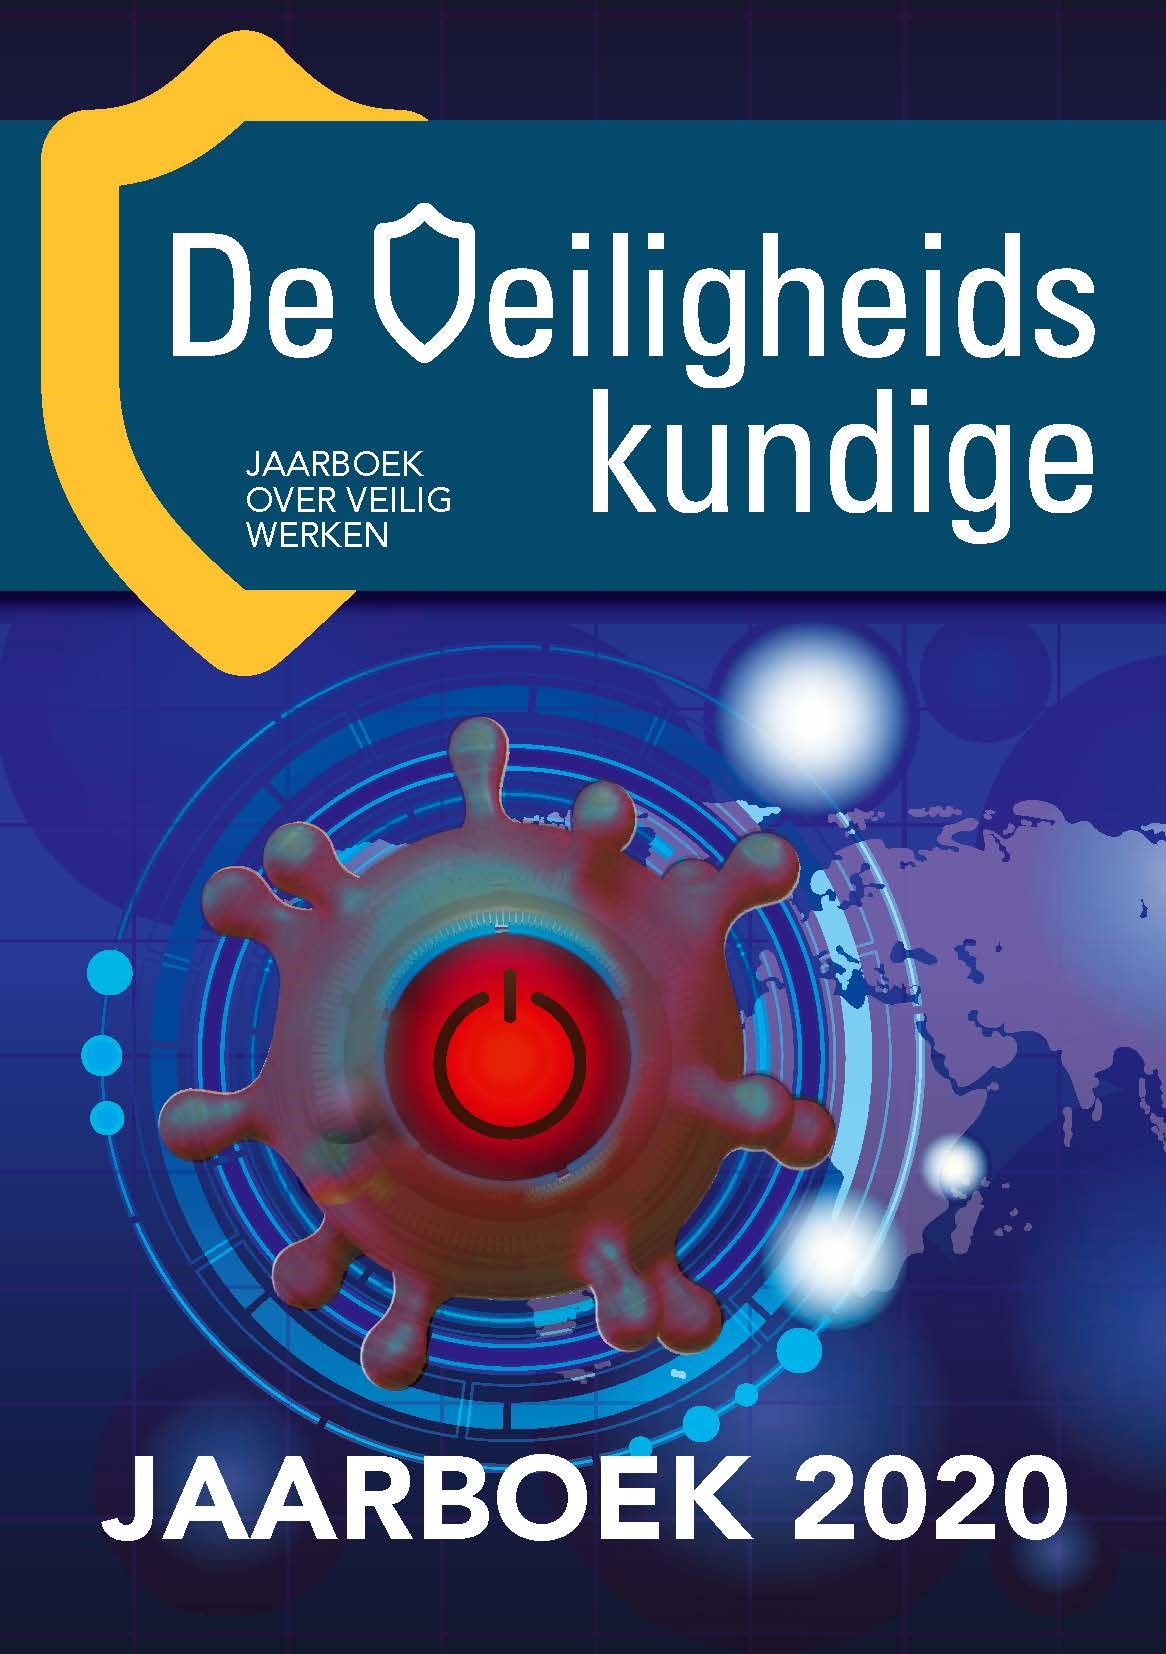 DVK Jaarboek 2020, cover.jpg